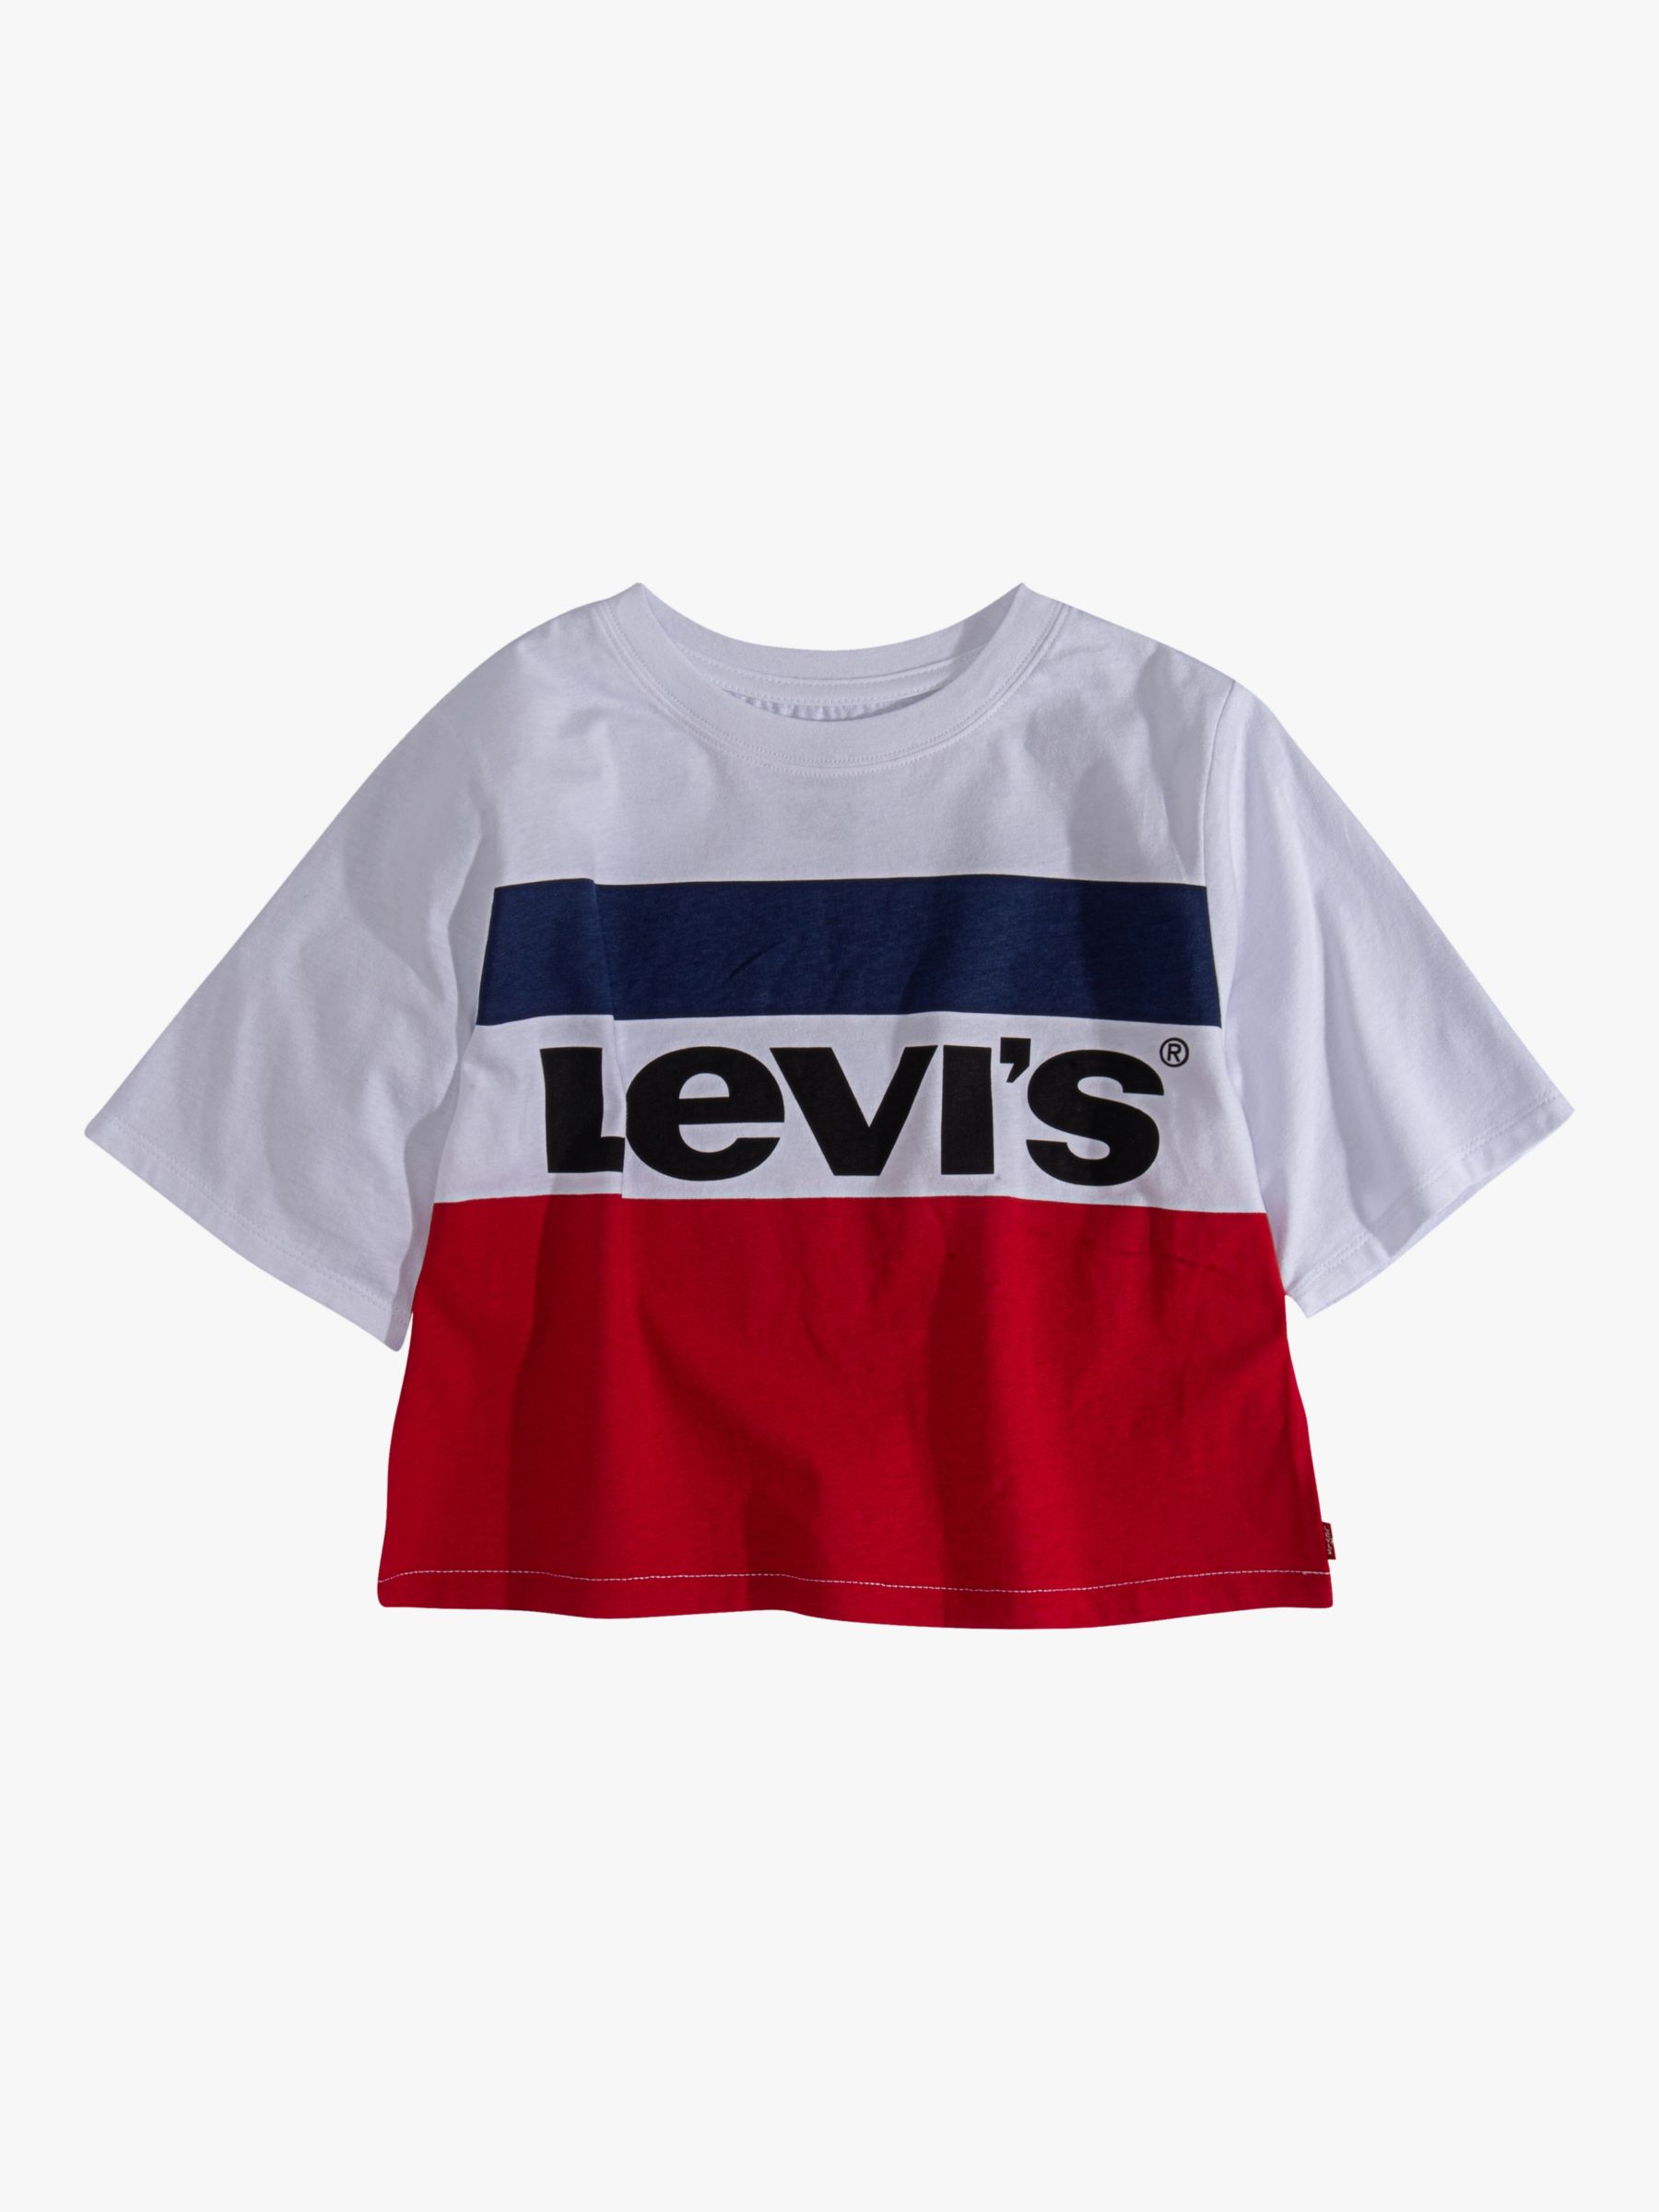 girls levis tshirt